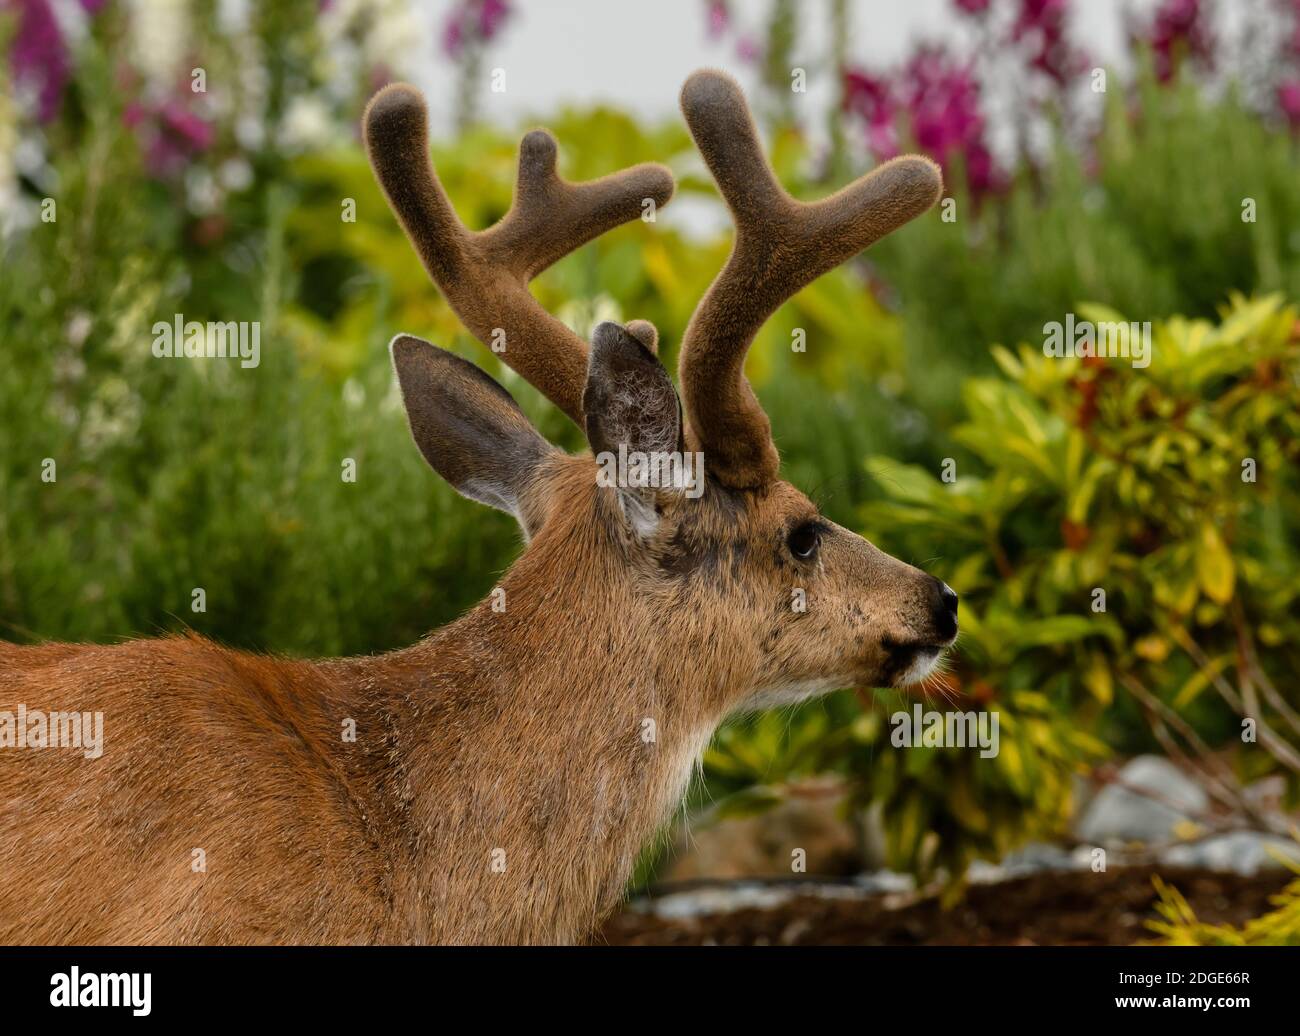 Ciervo macho con cuernos de terciopelo en un jardín Foto de stock